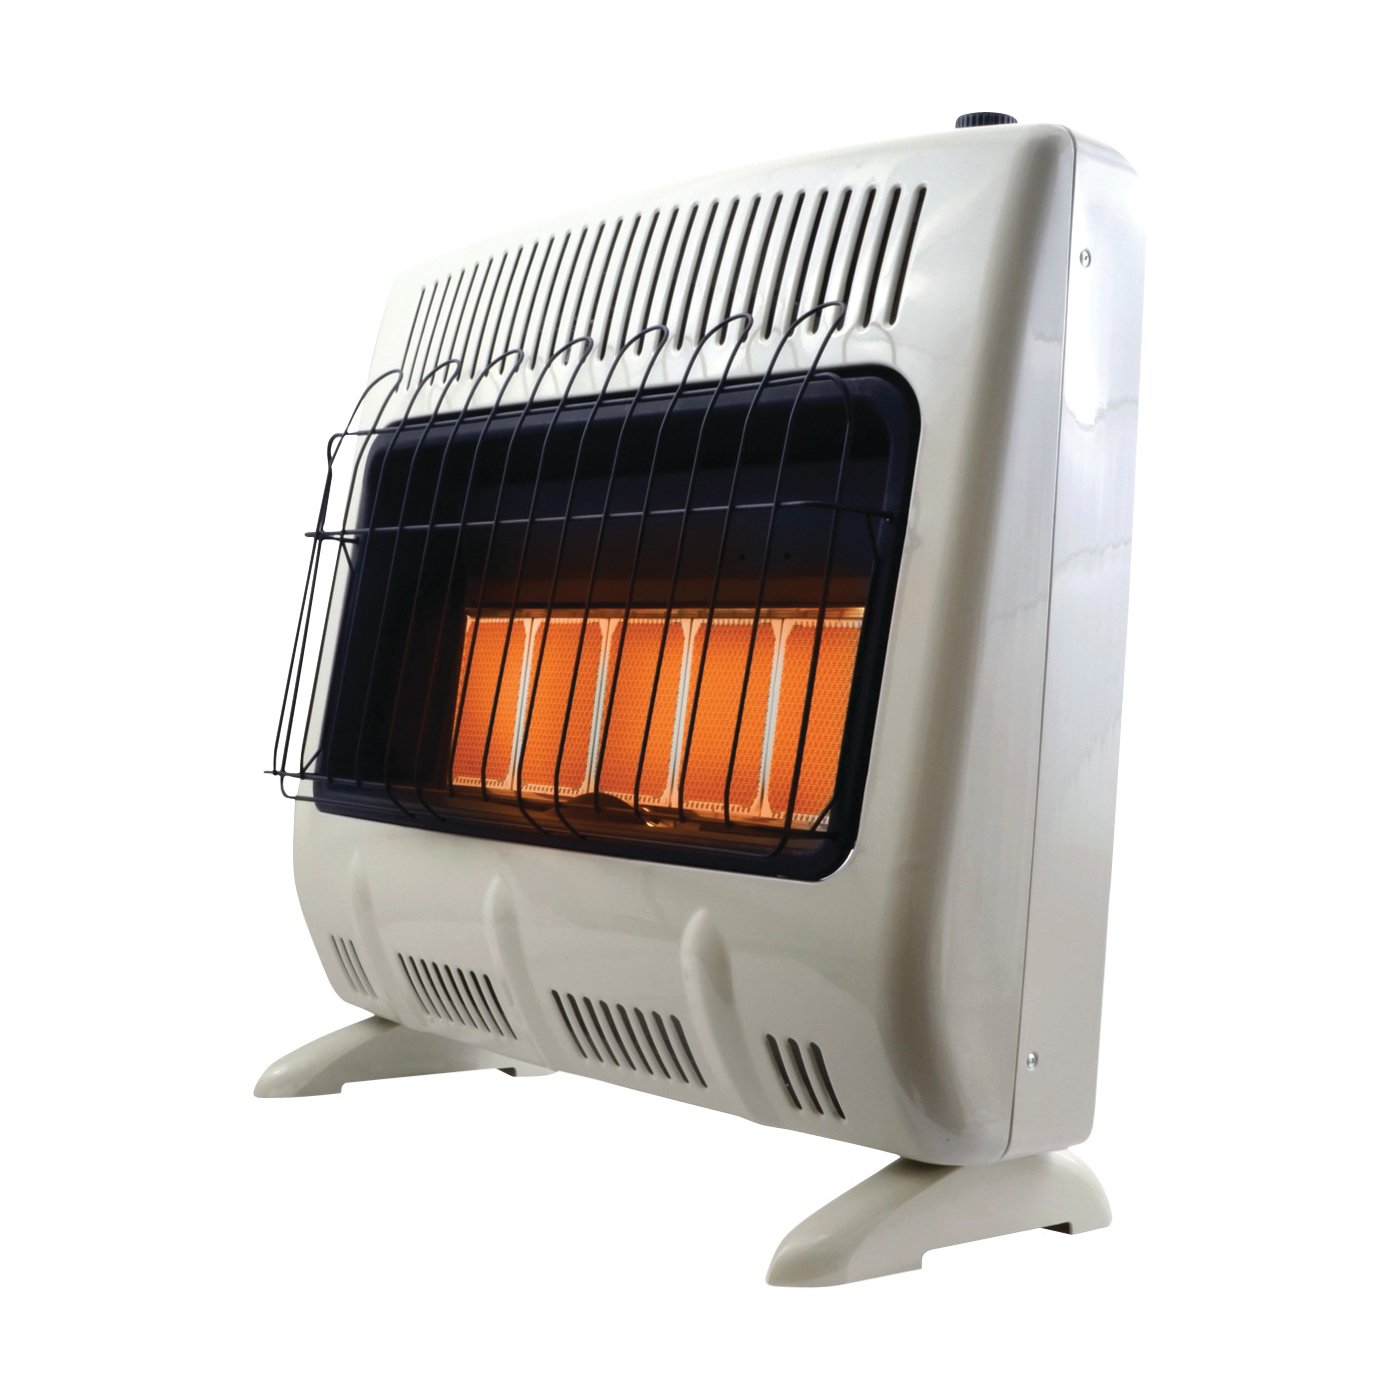 Mr. Heater F299830 Vent-Free Radiant Heater, 23-3/4 in W, 27 in H, 30000 Btu Heating, Propane